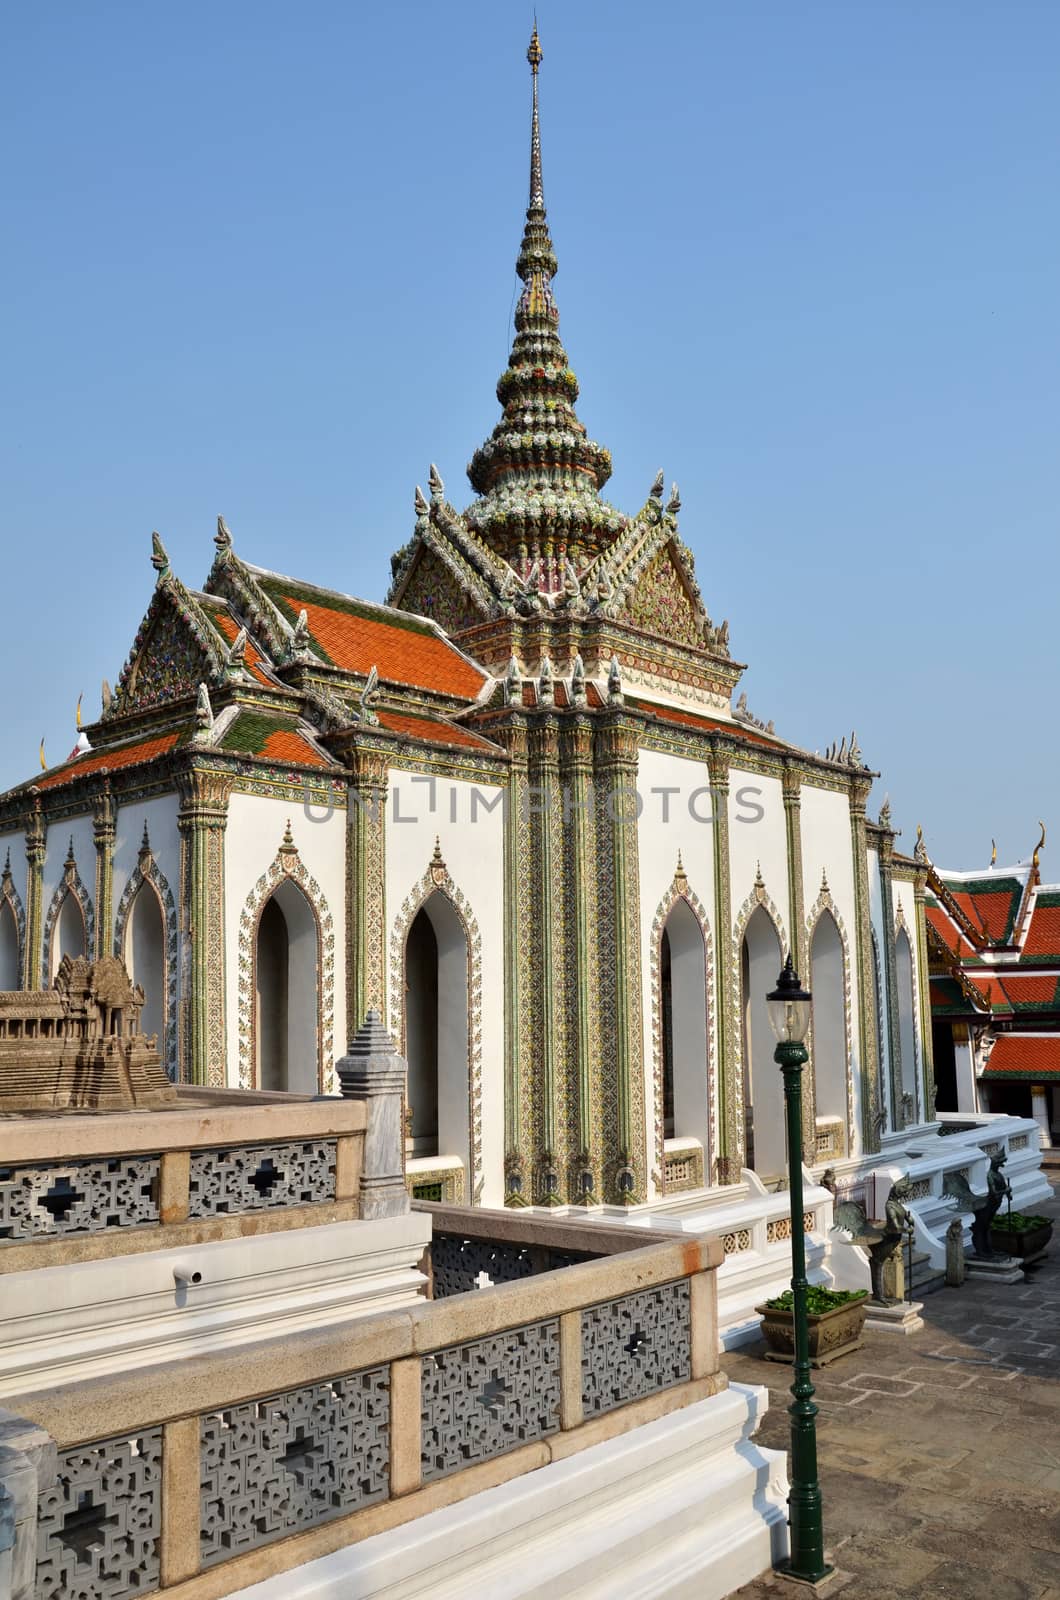 Grand Palace, Bangkok by tang90246